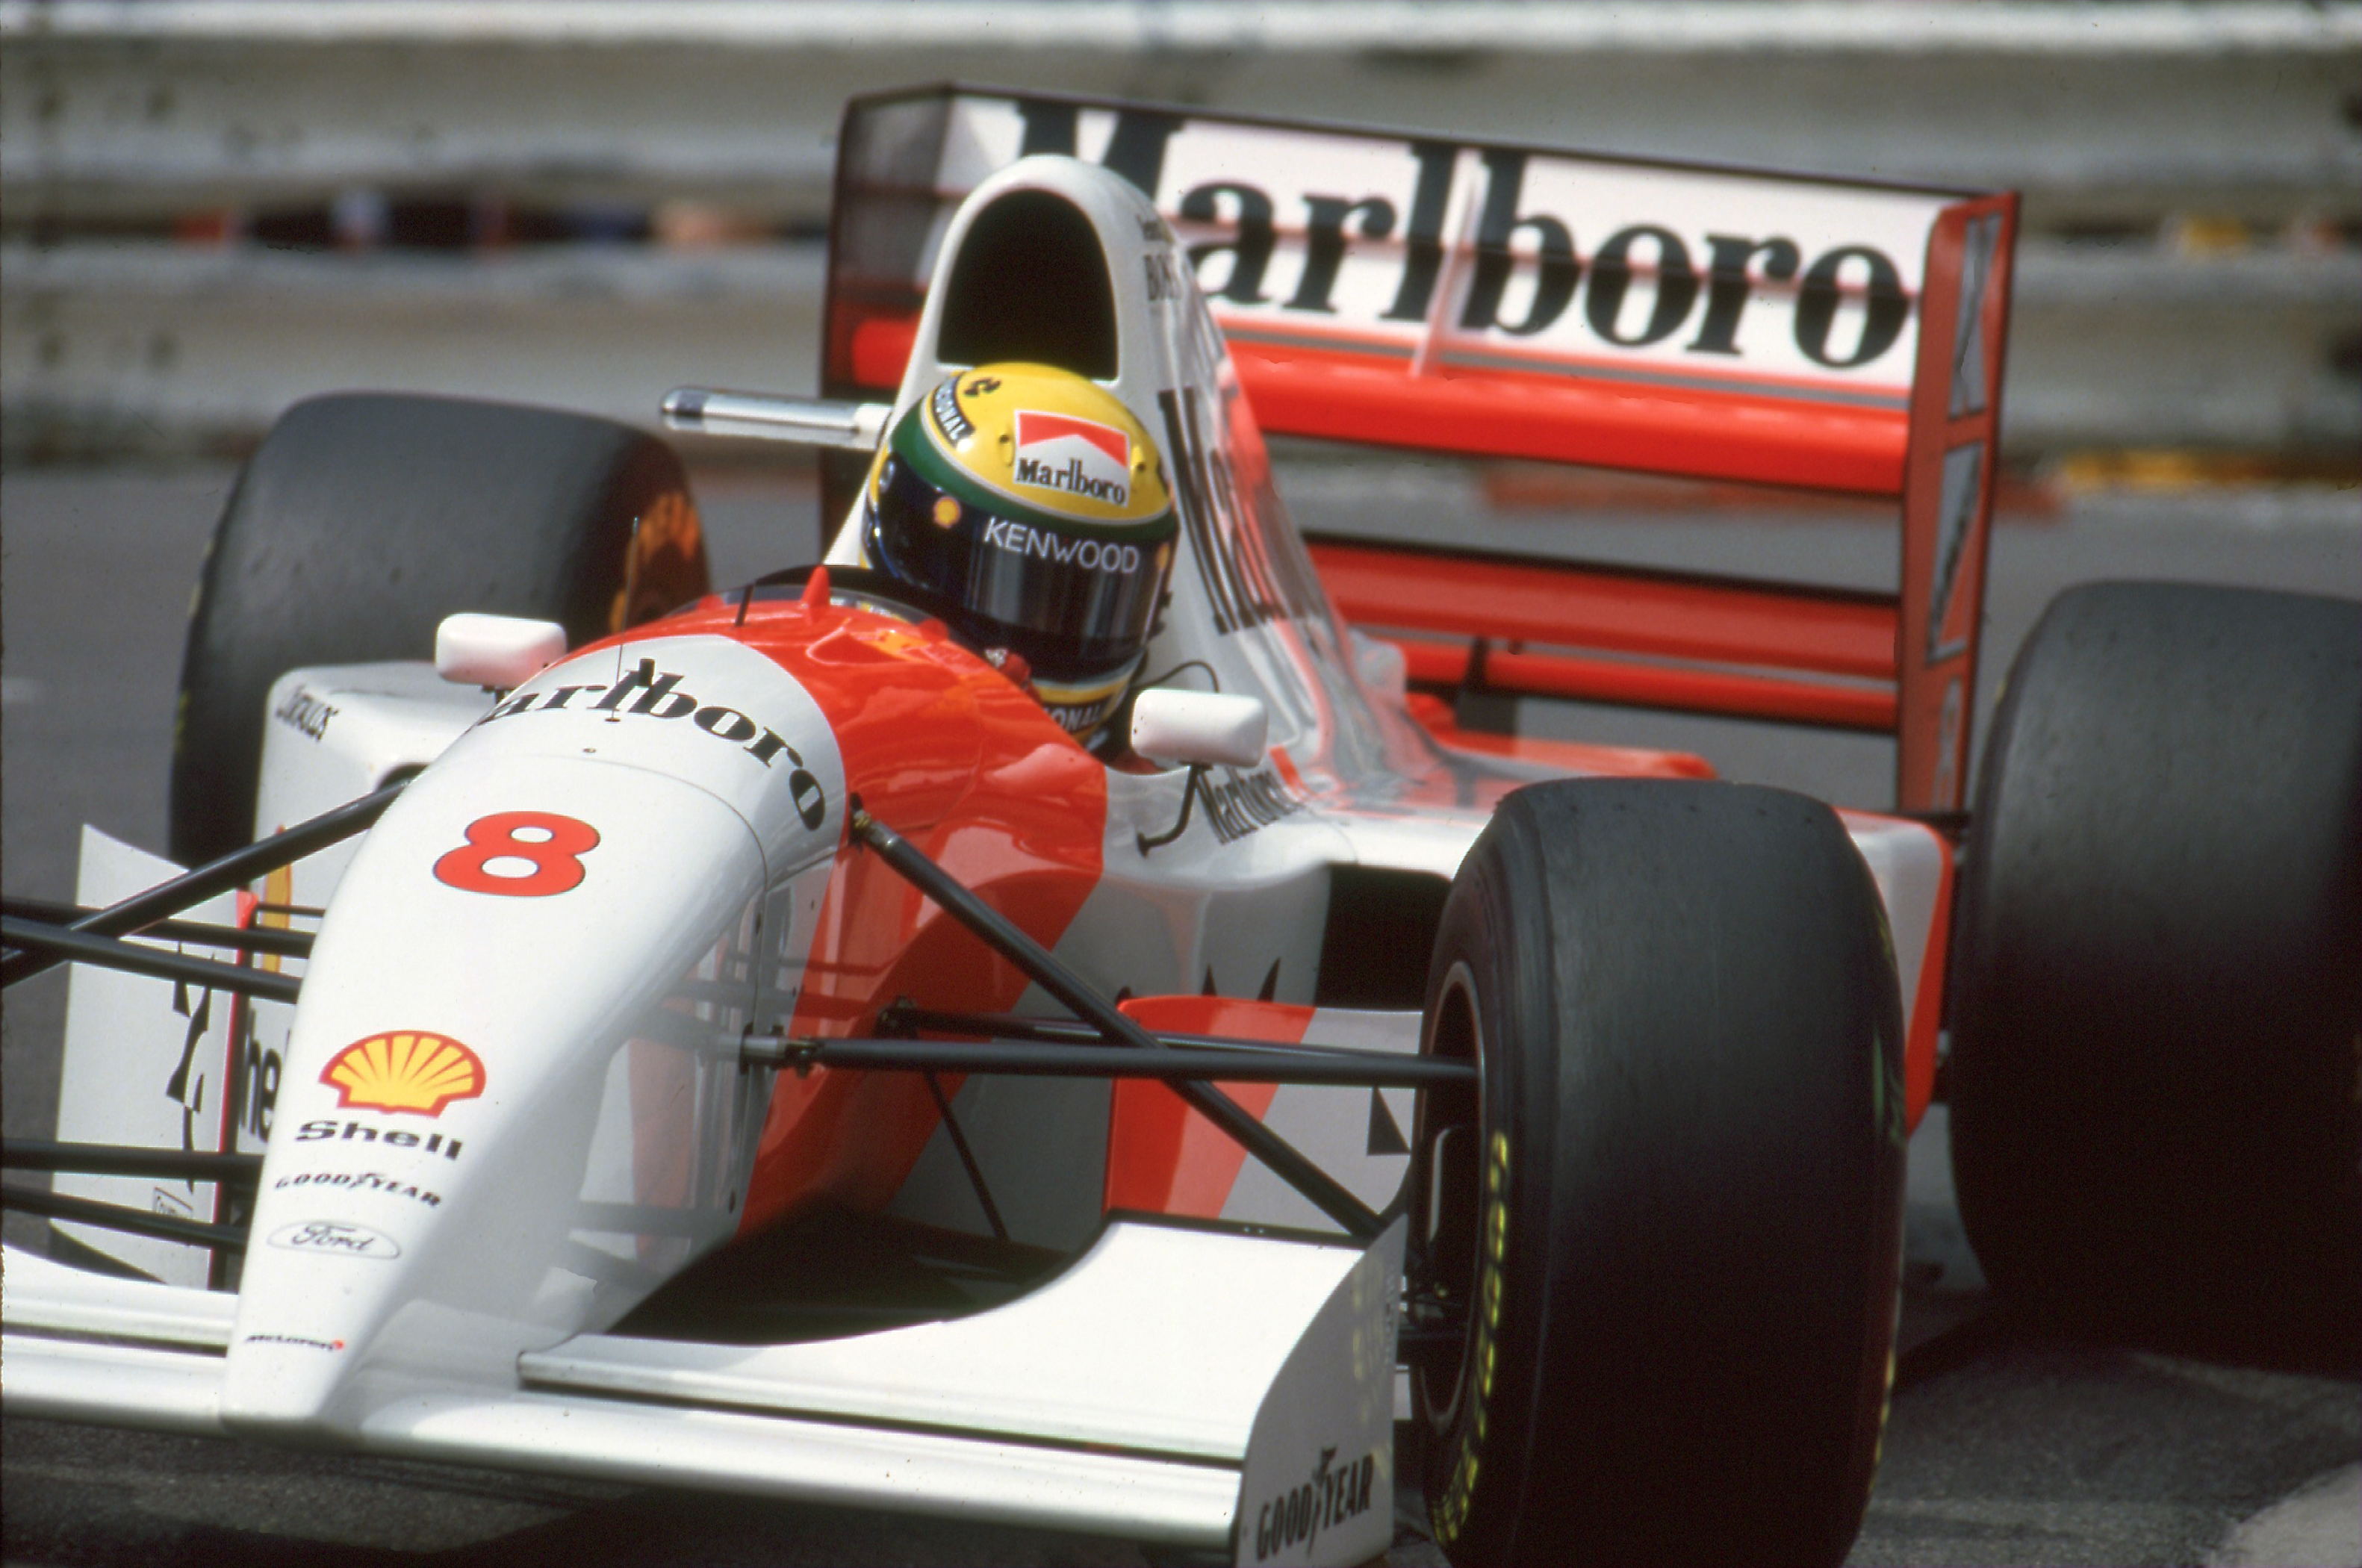 1993 McLaren F1: Legend Series